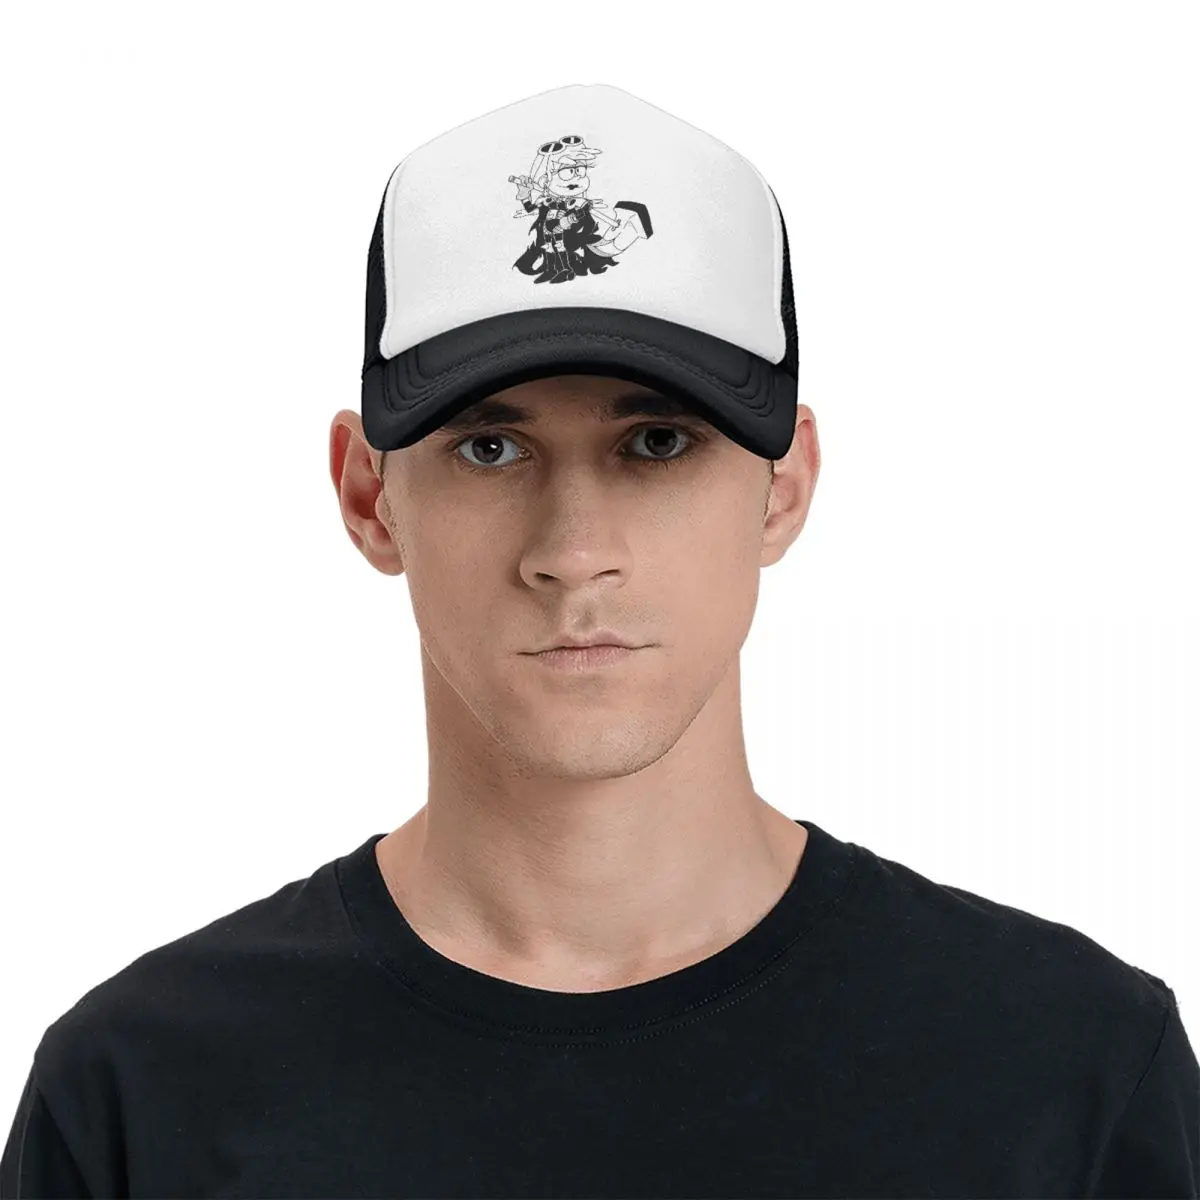 Leni Baseball Cap The Loud Houses Mesh Net Hat For Men Women Stylish Trucker Hats adjustable Peaked Caps images - 6